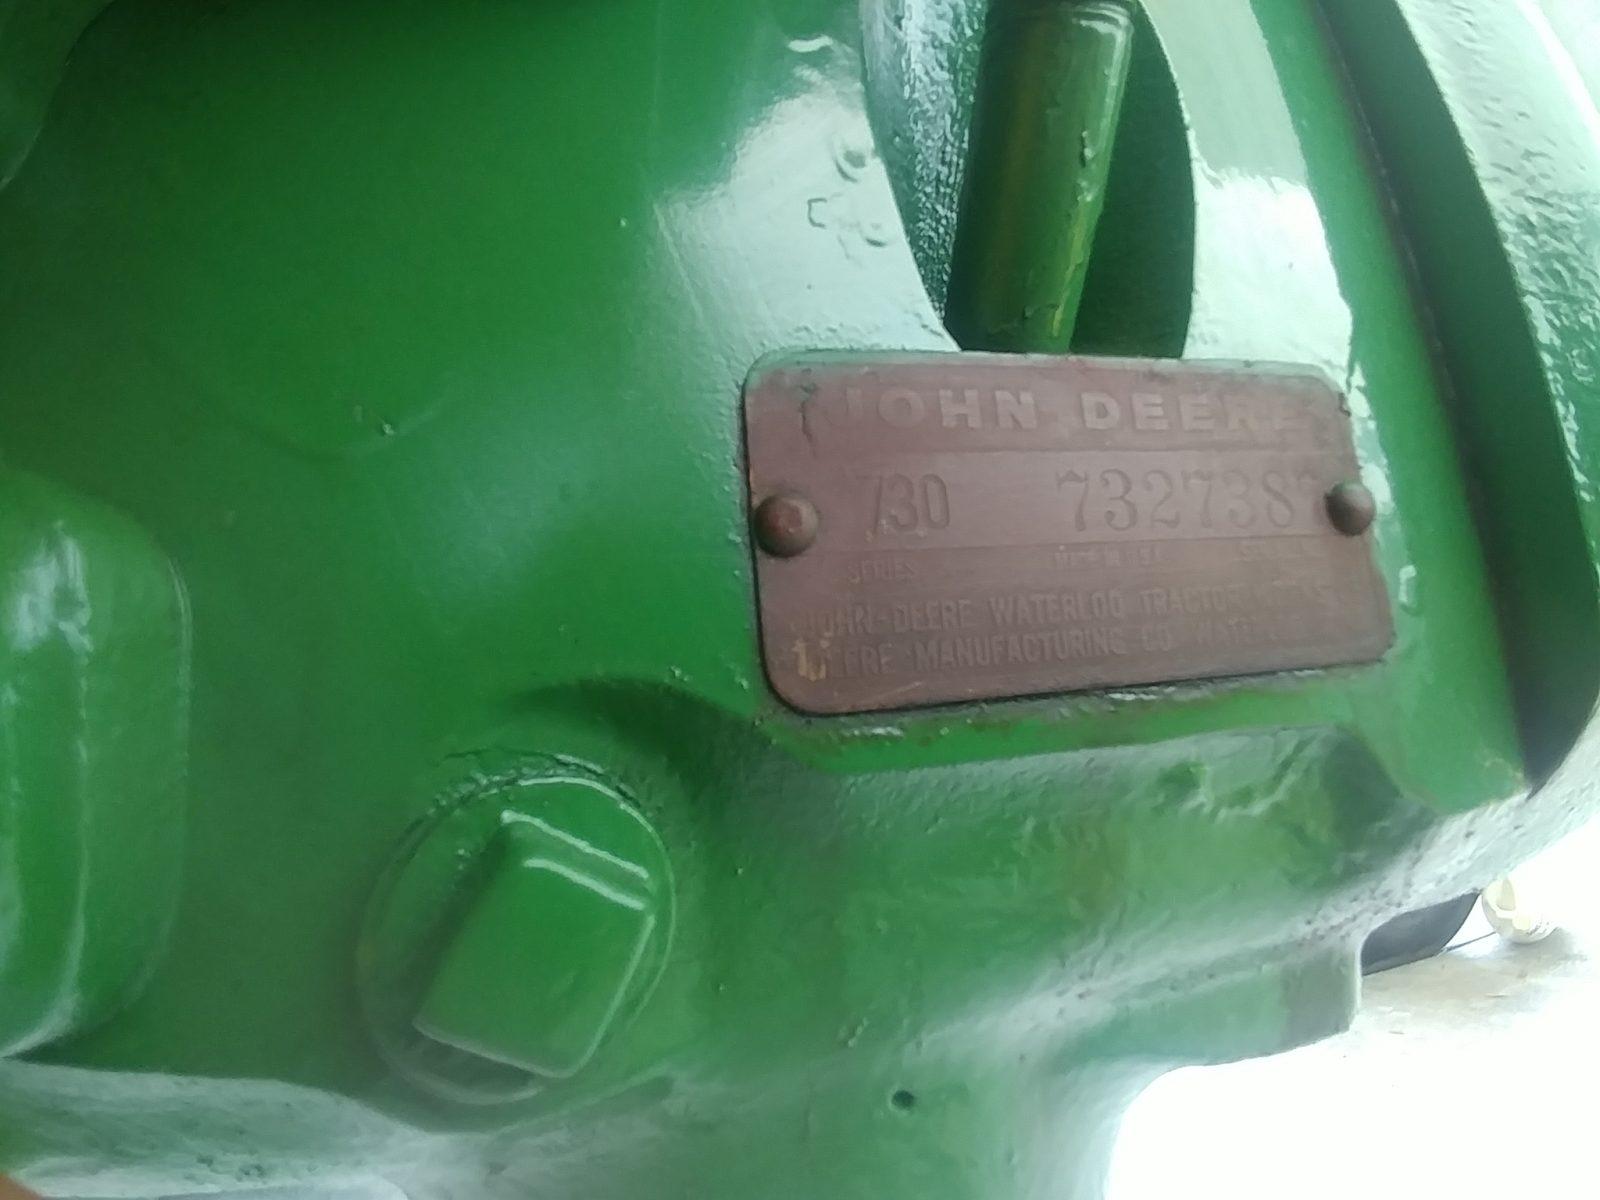 John Deere 730 Tractor, s/n 730-7327387: Diesel, Power Steering, Wide Front